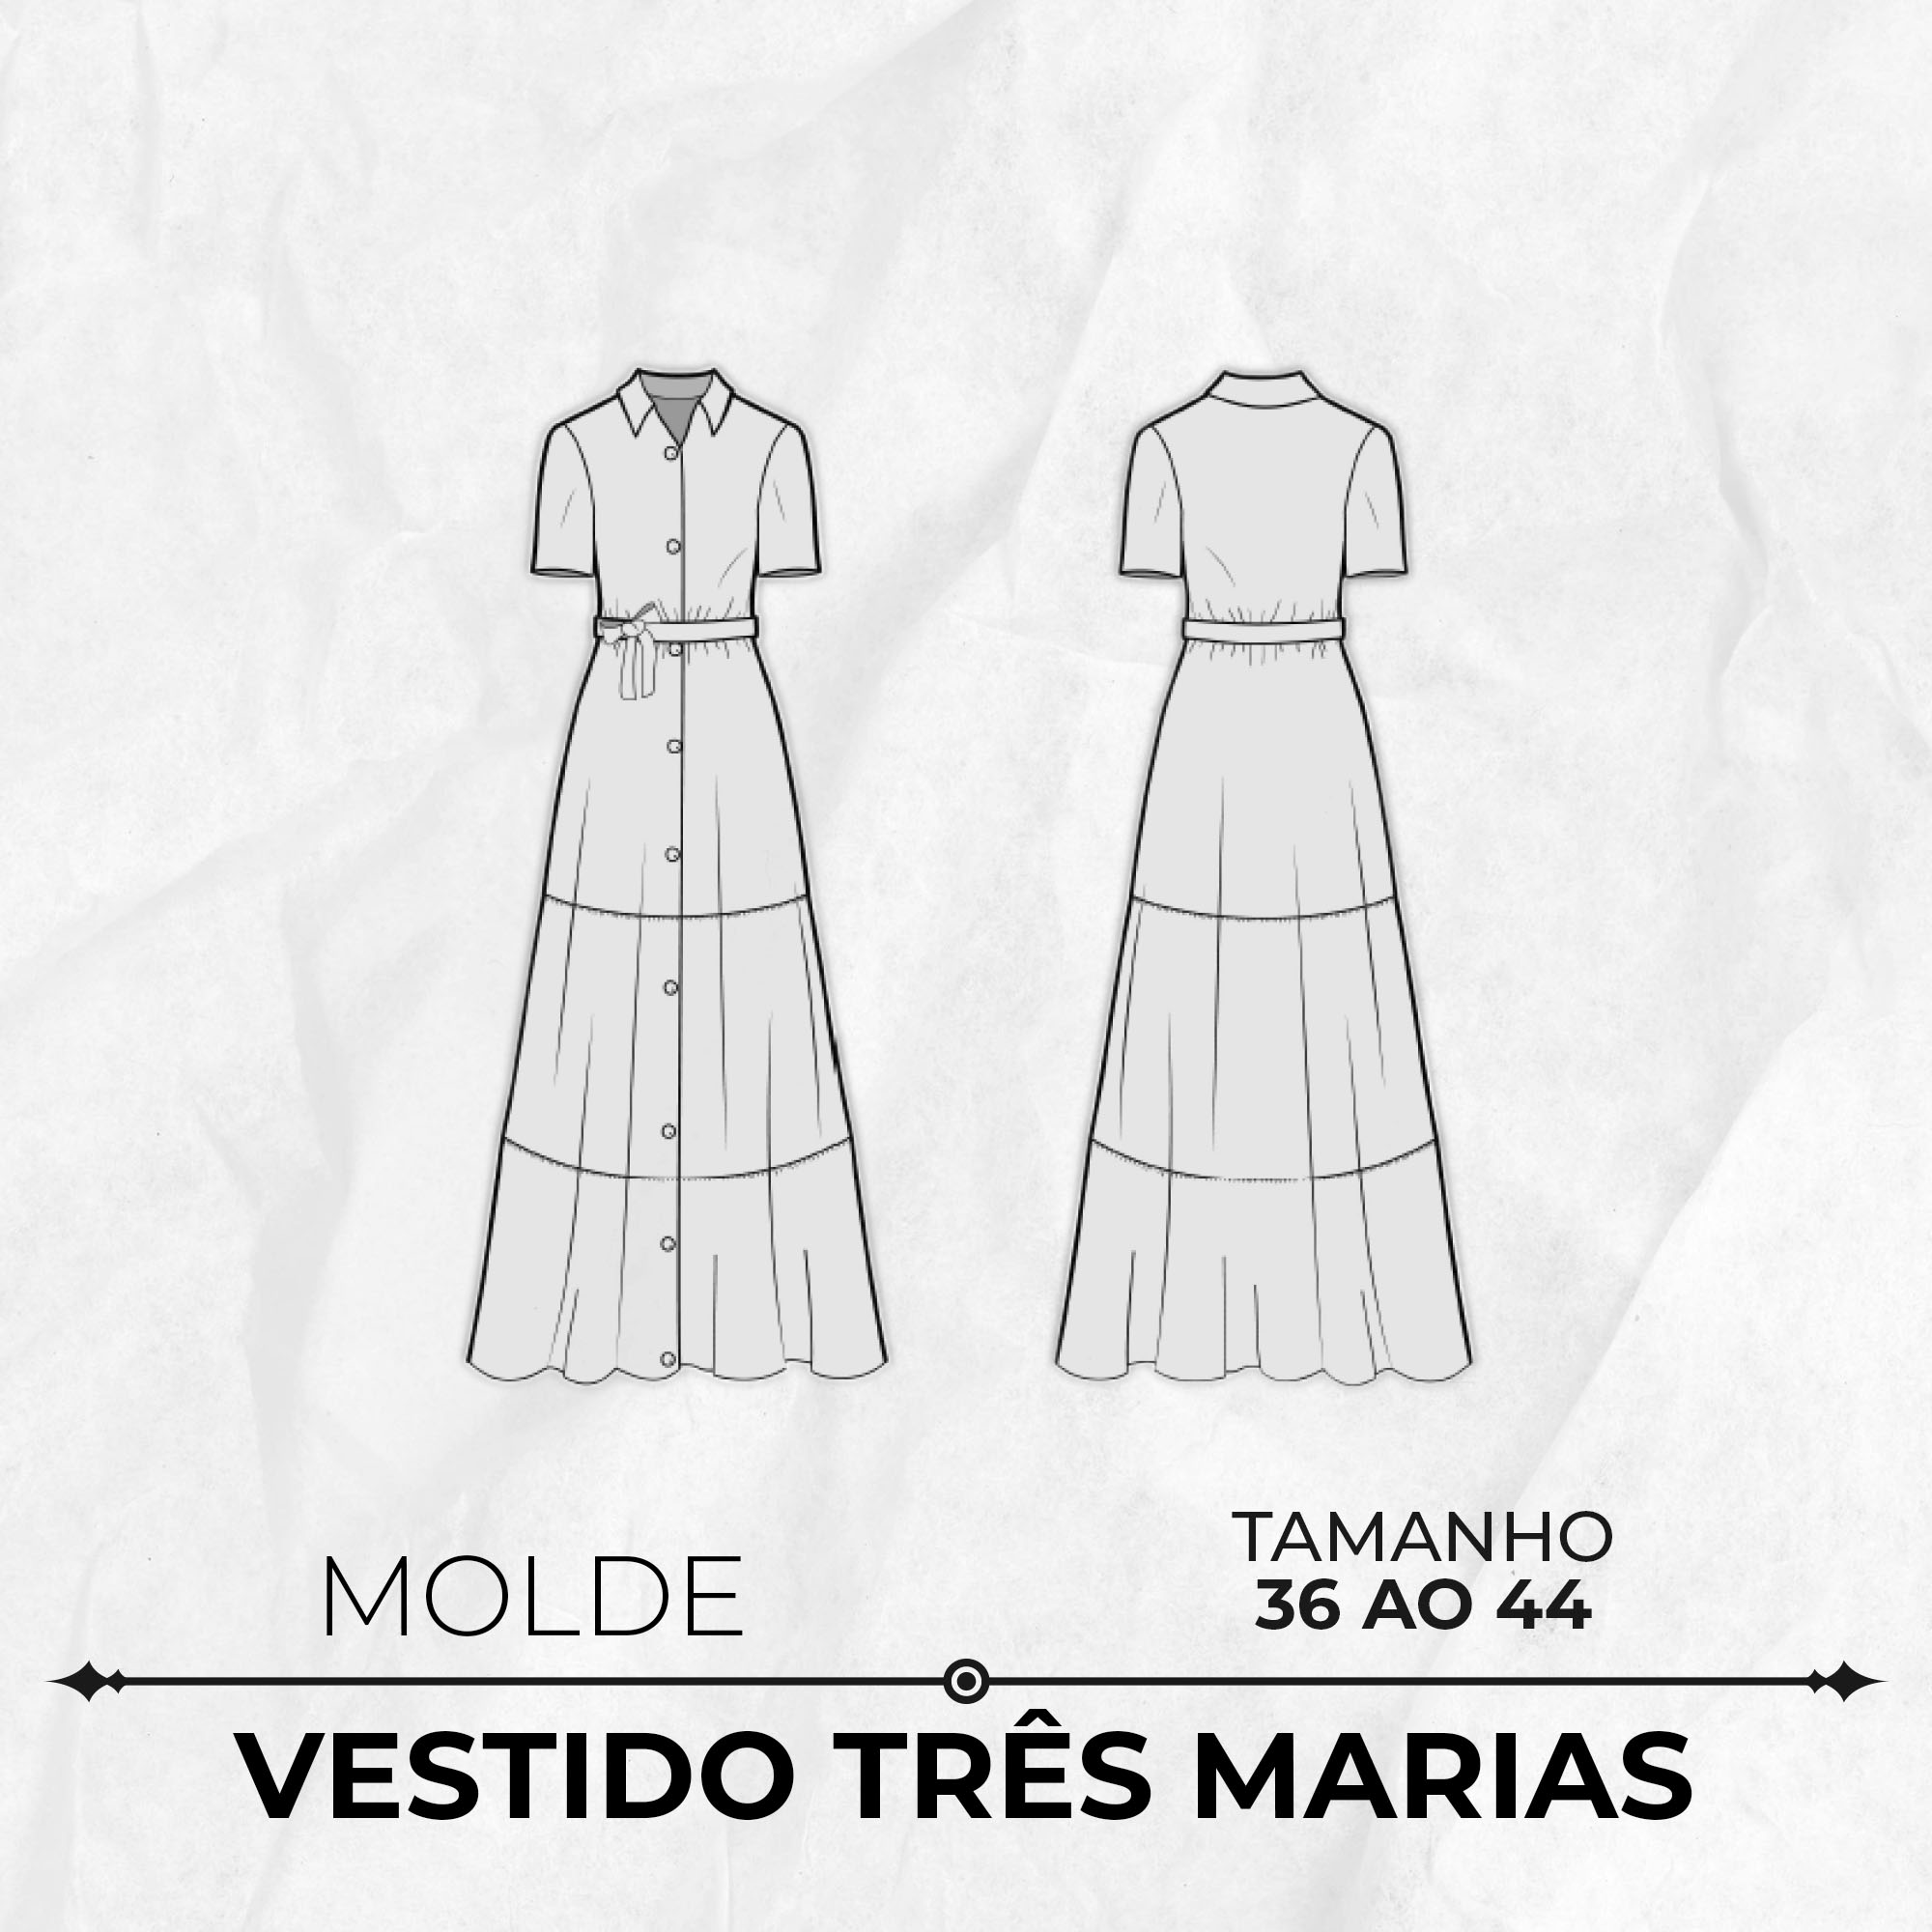 Molde de vestido três marias tamanho 36 ao 44 by Wania Machado